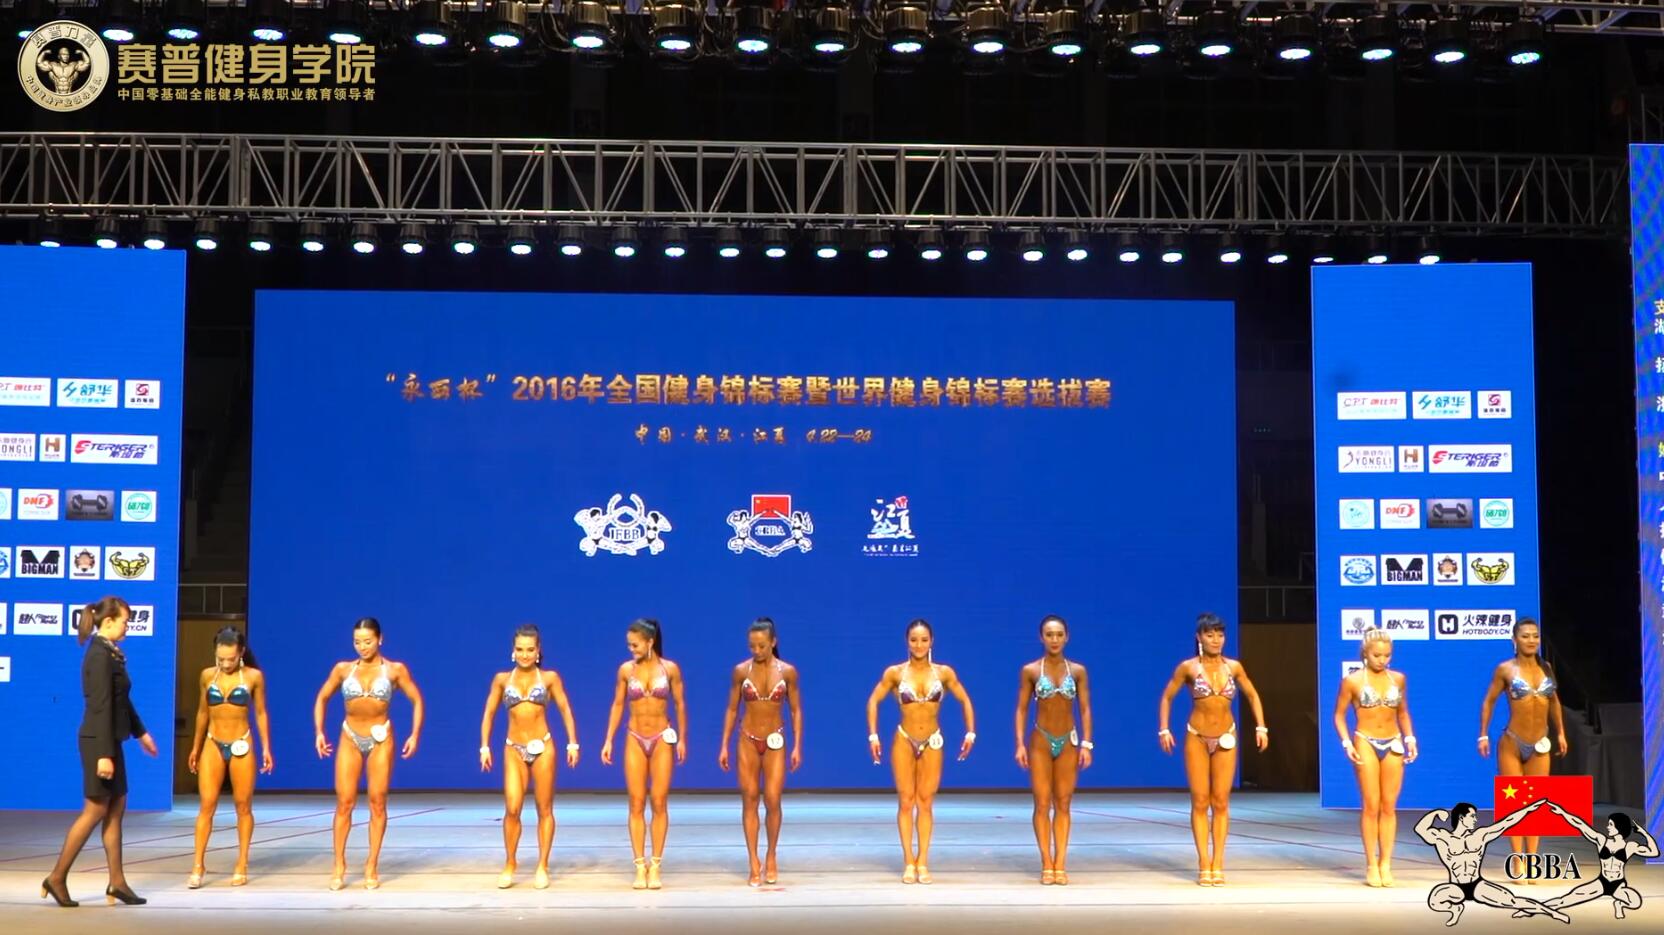 2016年全国健身锦标赛：女子形体A组  决赛